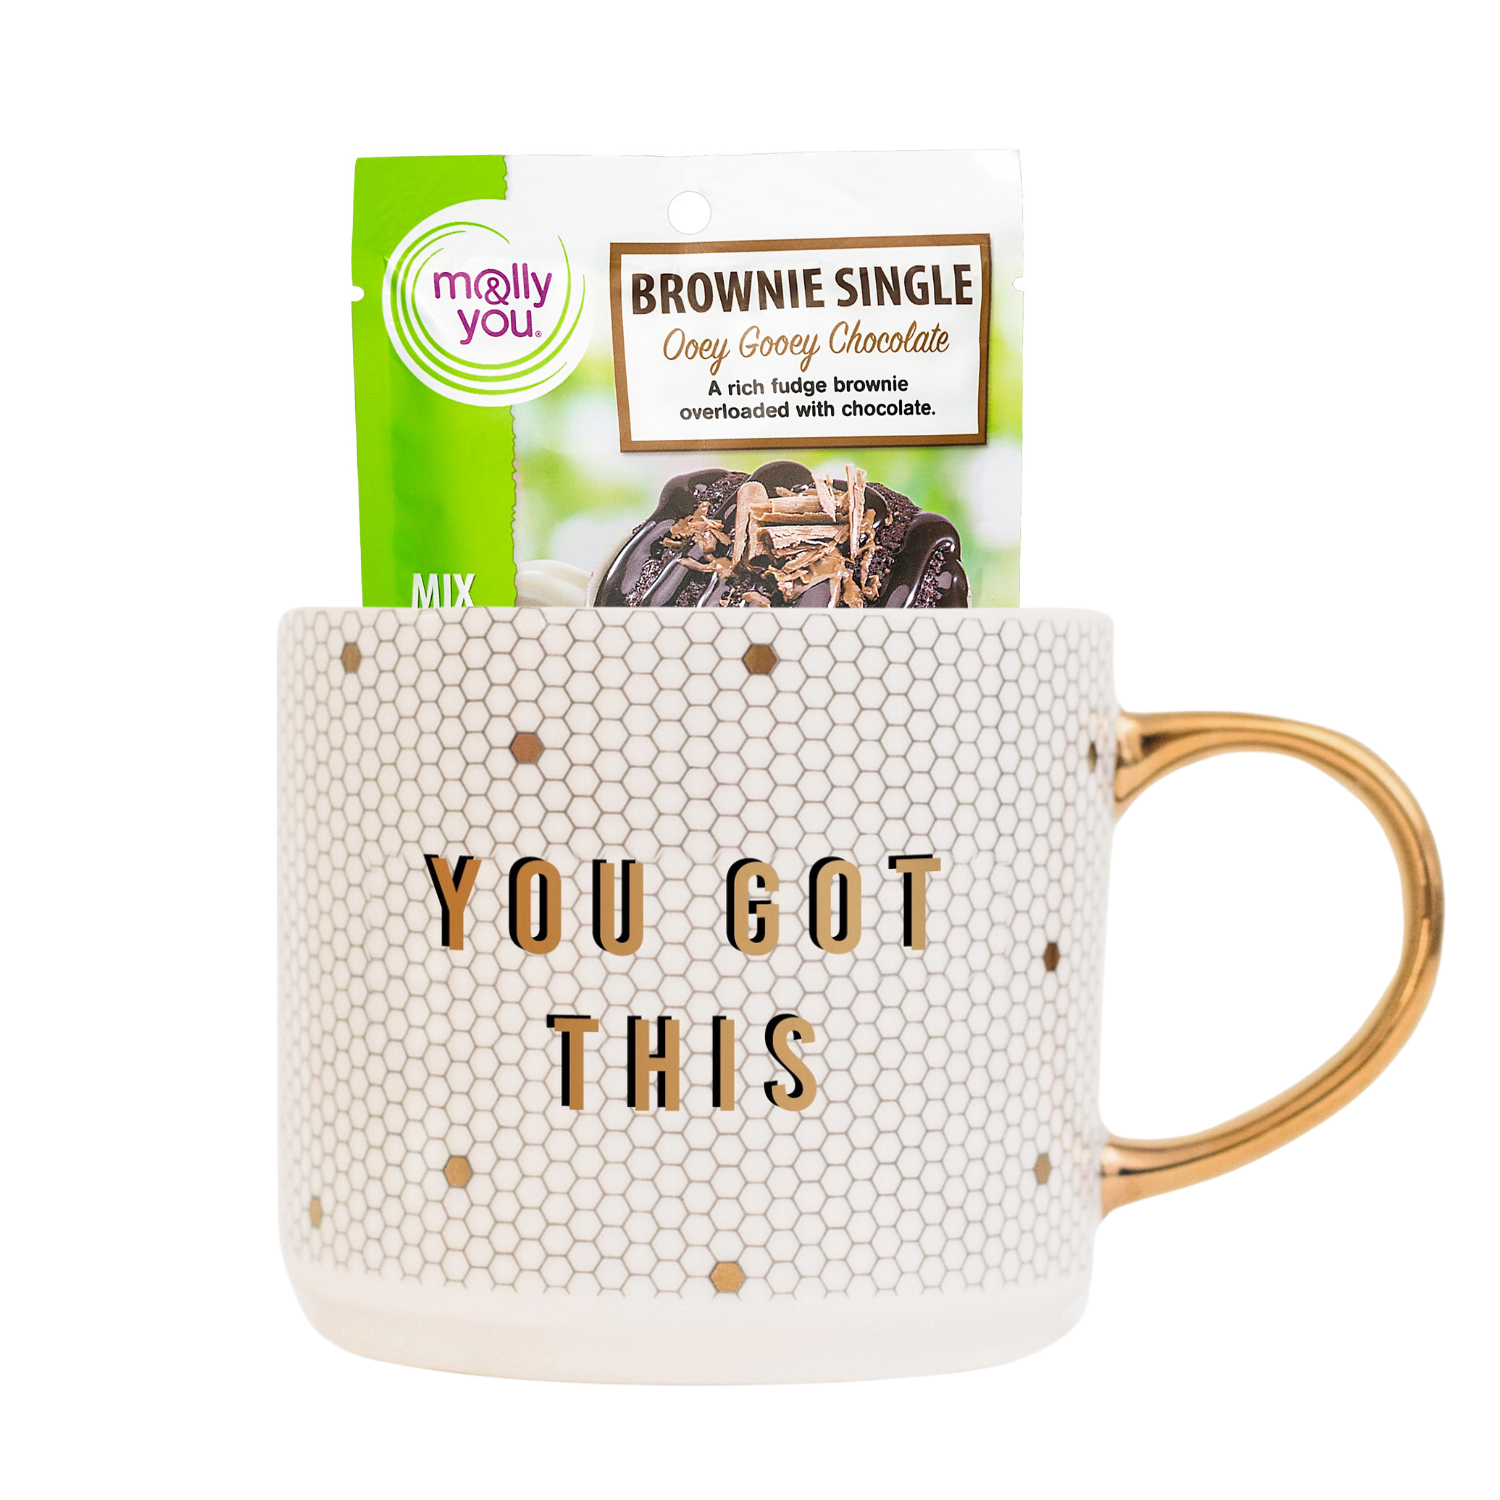 You got this coffee mug with Ooey Gooey Chocolate Brownie Single